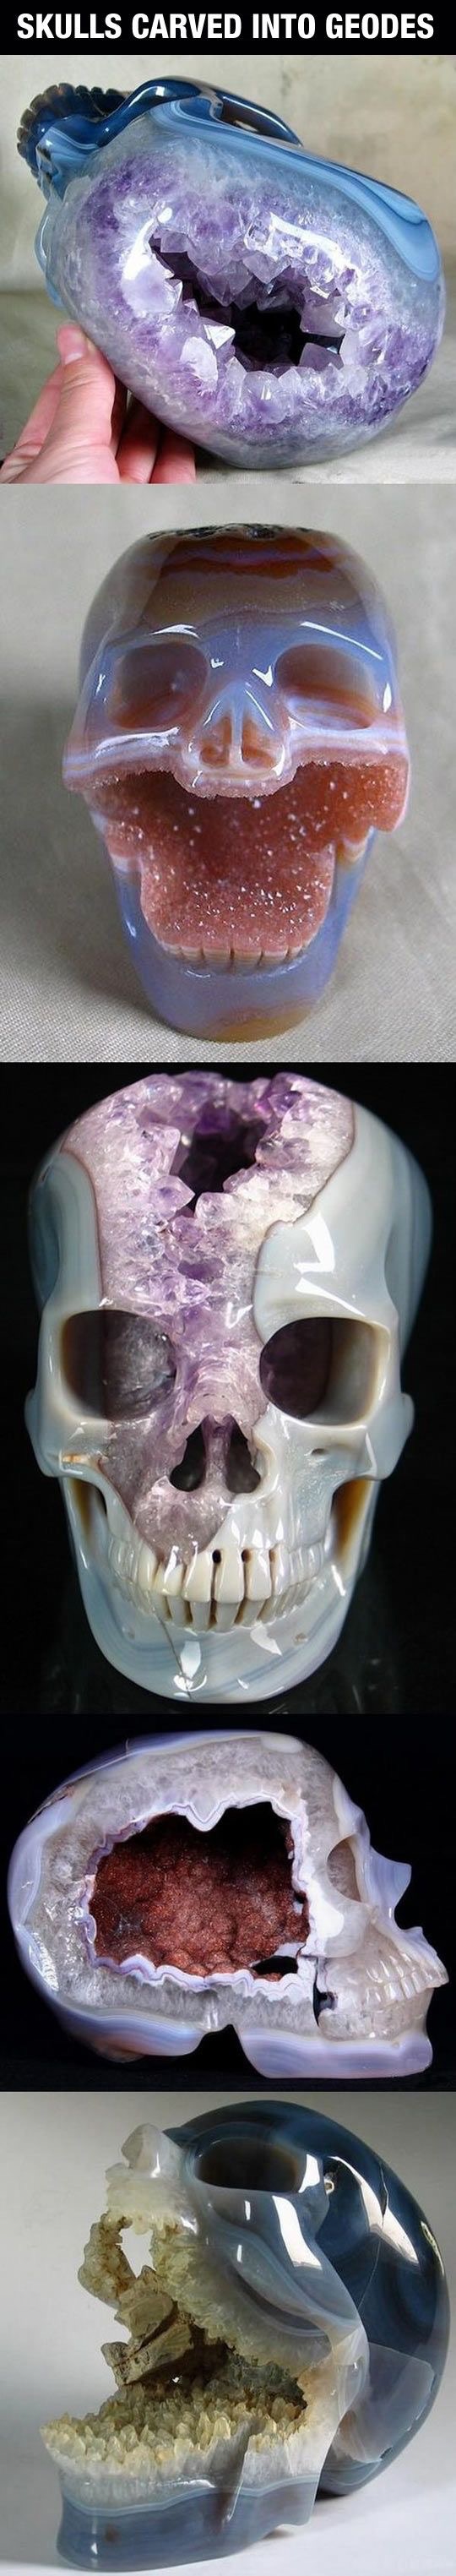 brutal skeleton memes - Skulls Carved Into Geodes